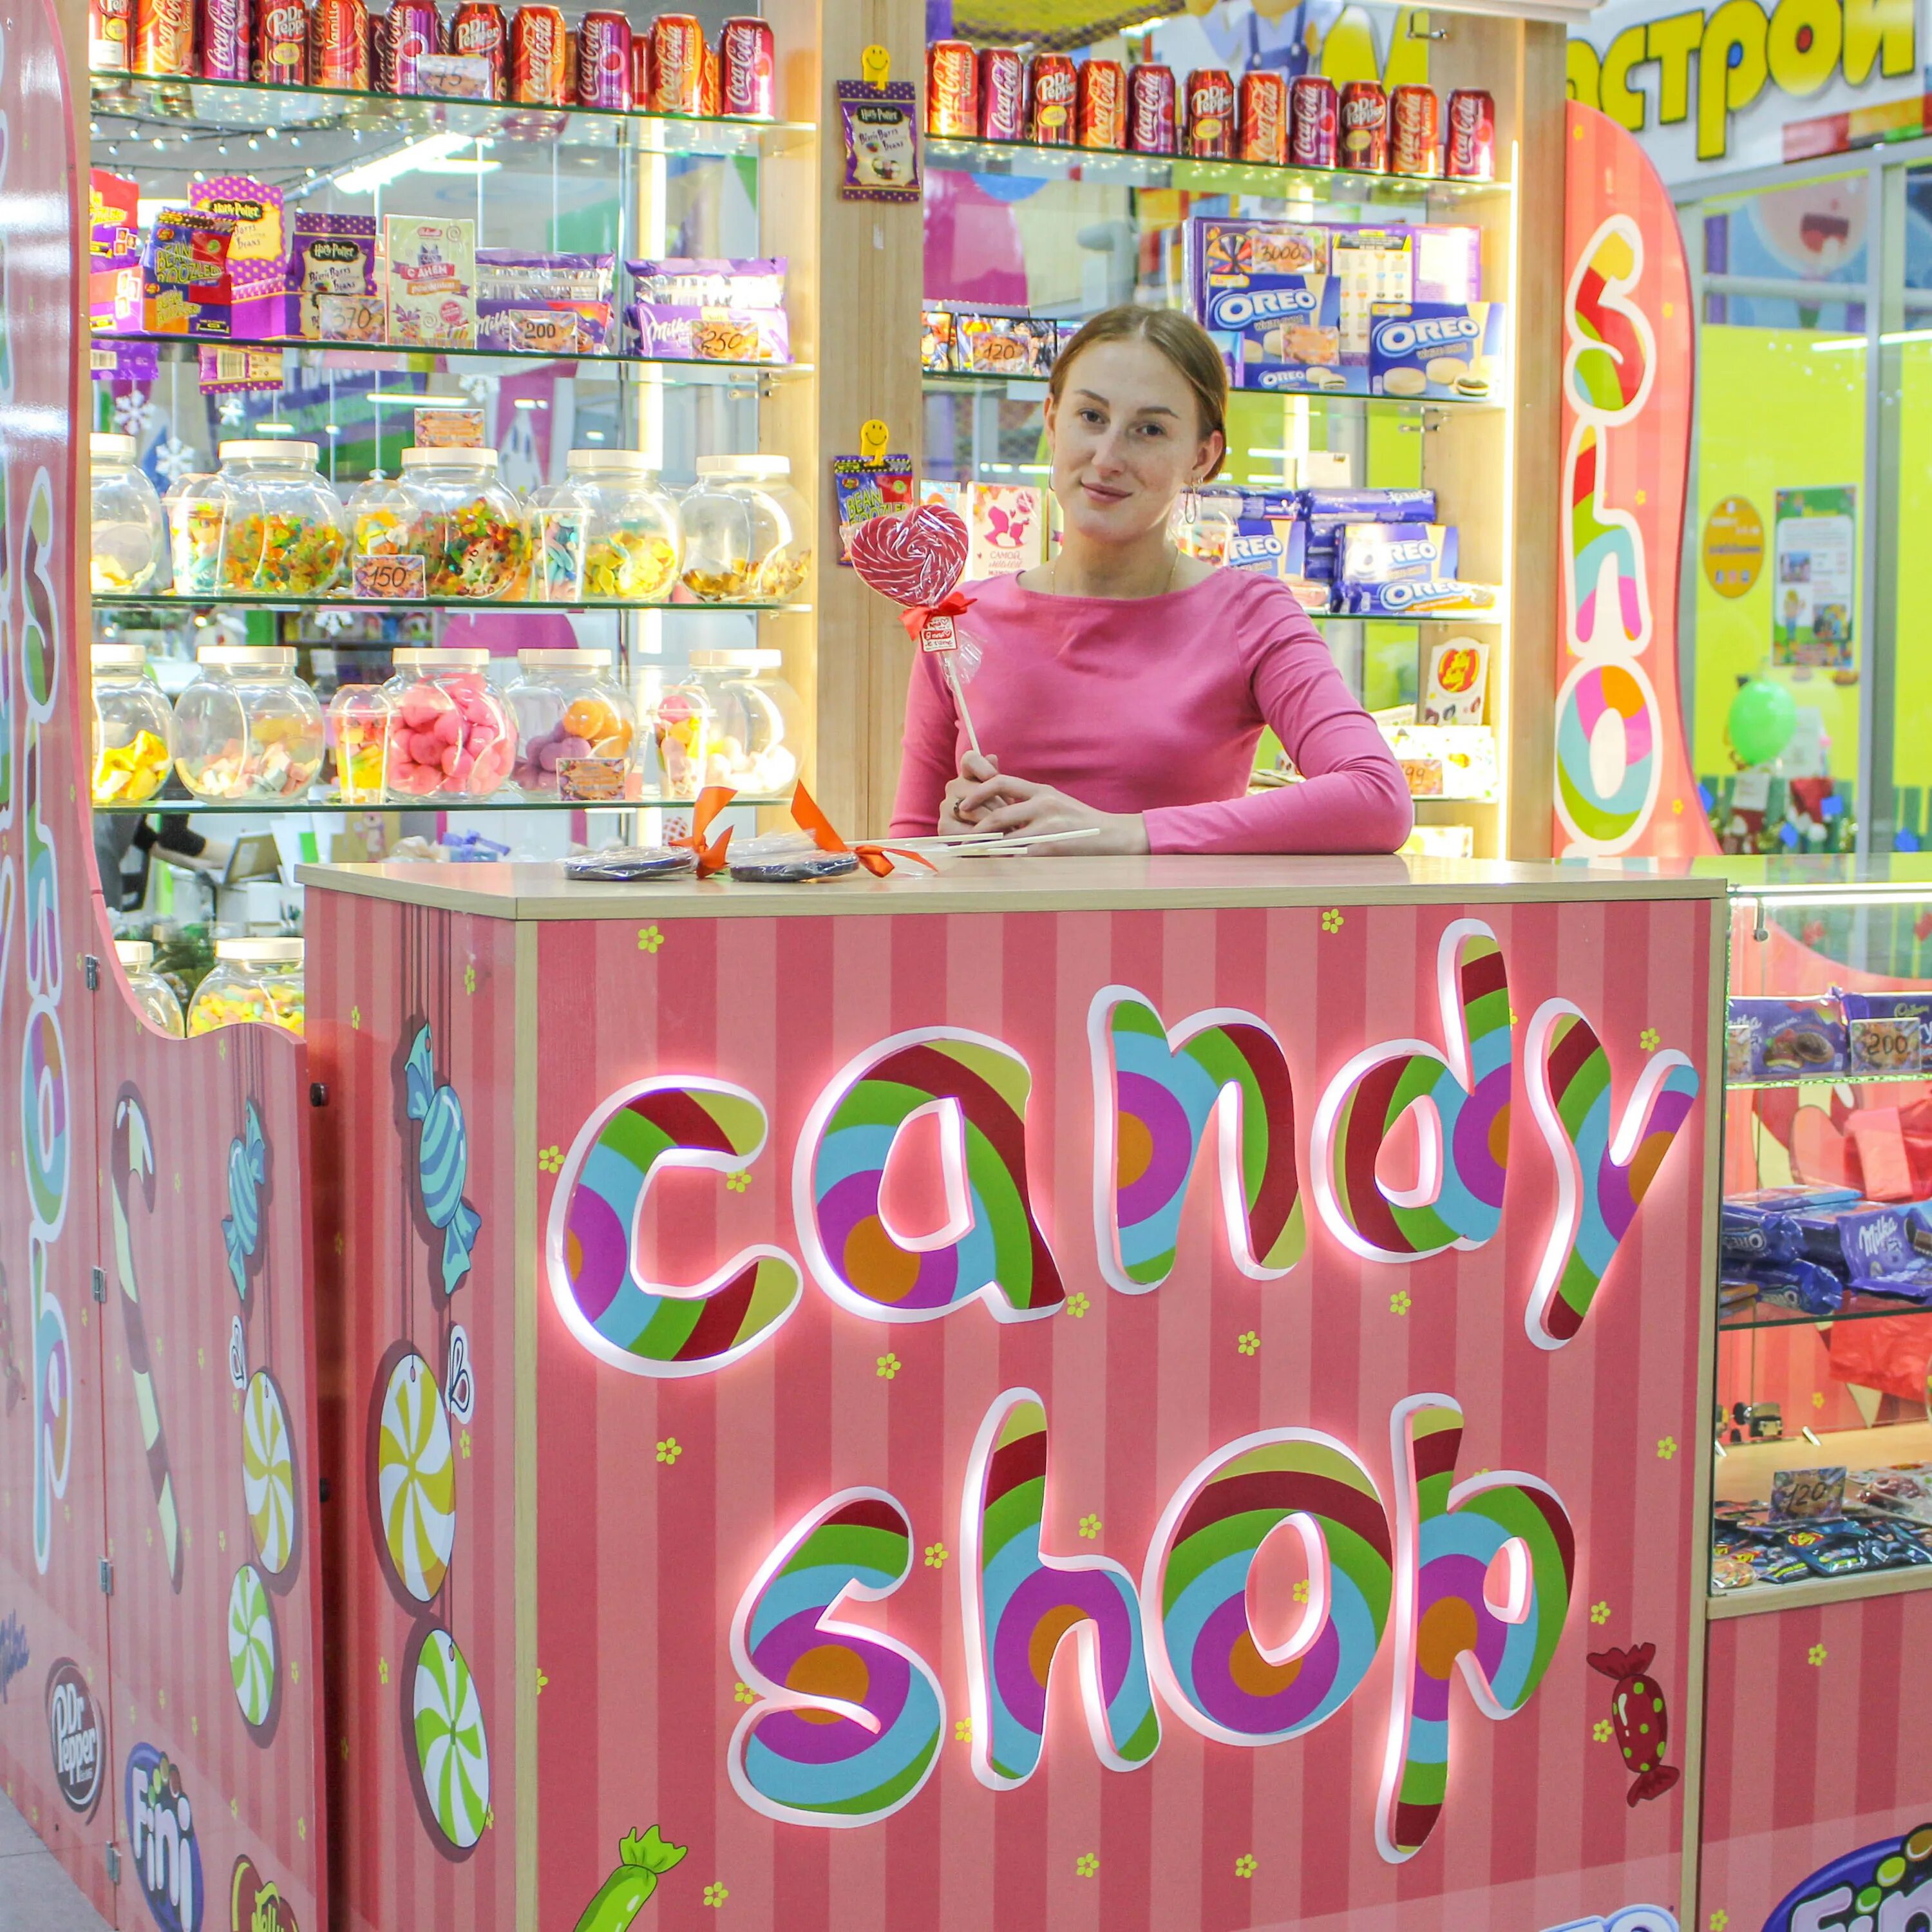 Candy shop 3. Магазин сладостей. Магазин сладостей вывеска. Название для магазина сладостей. Кенди шоп магазин сладостей.